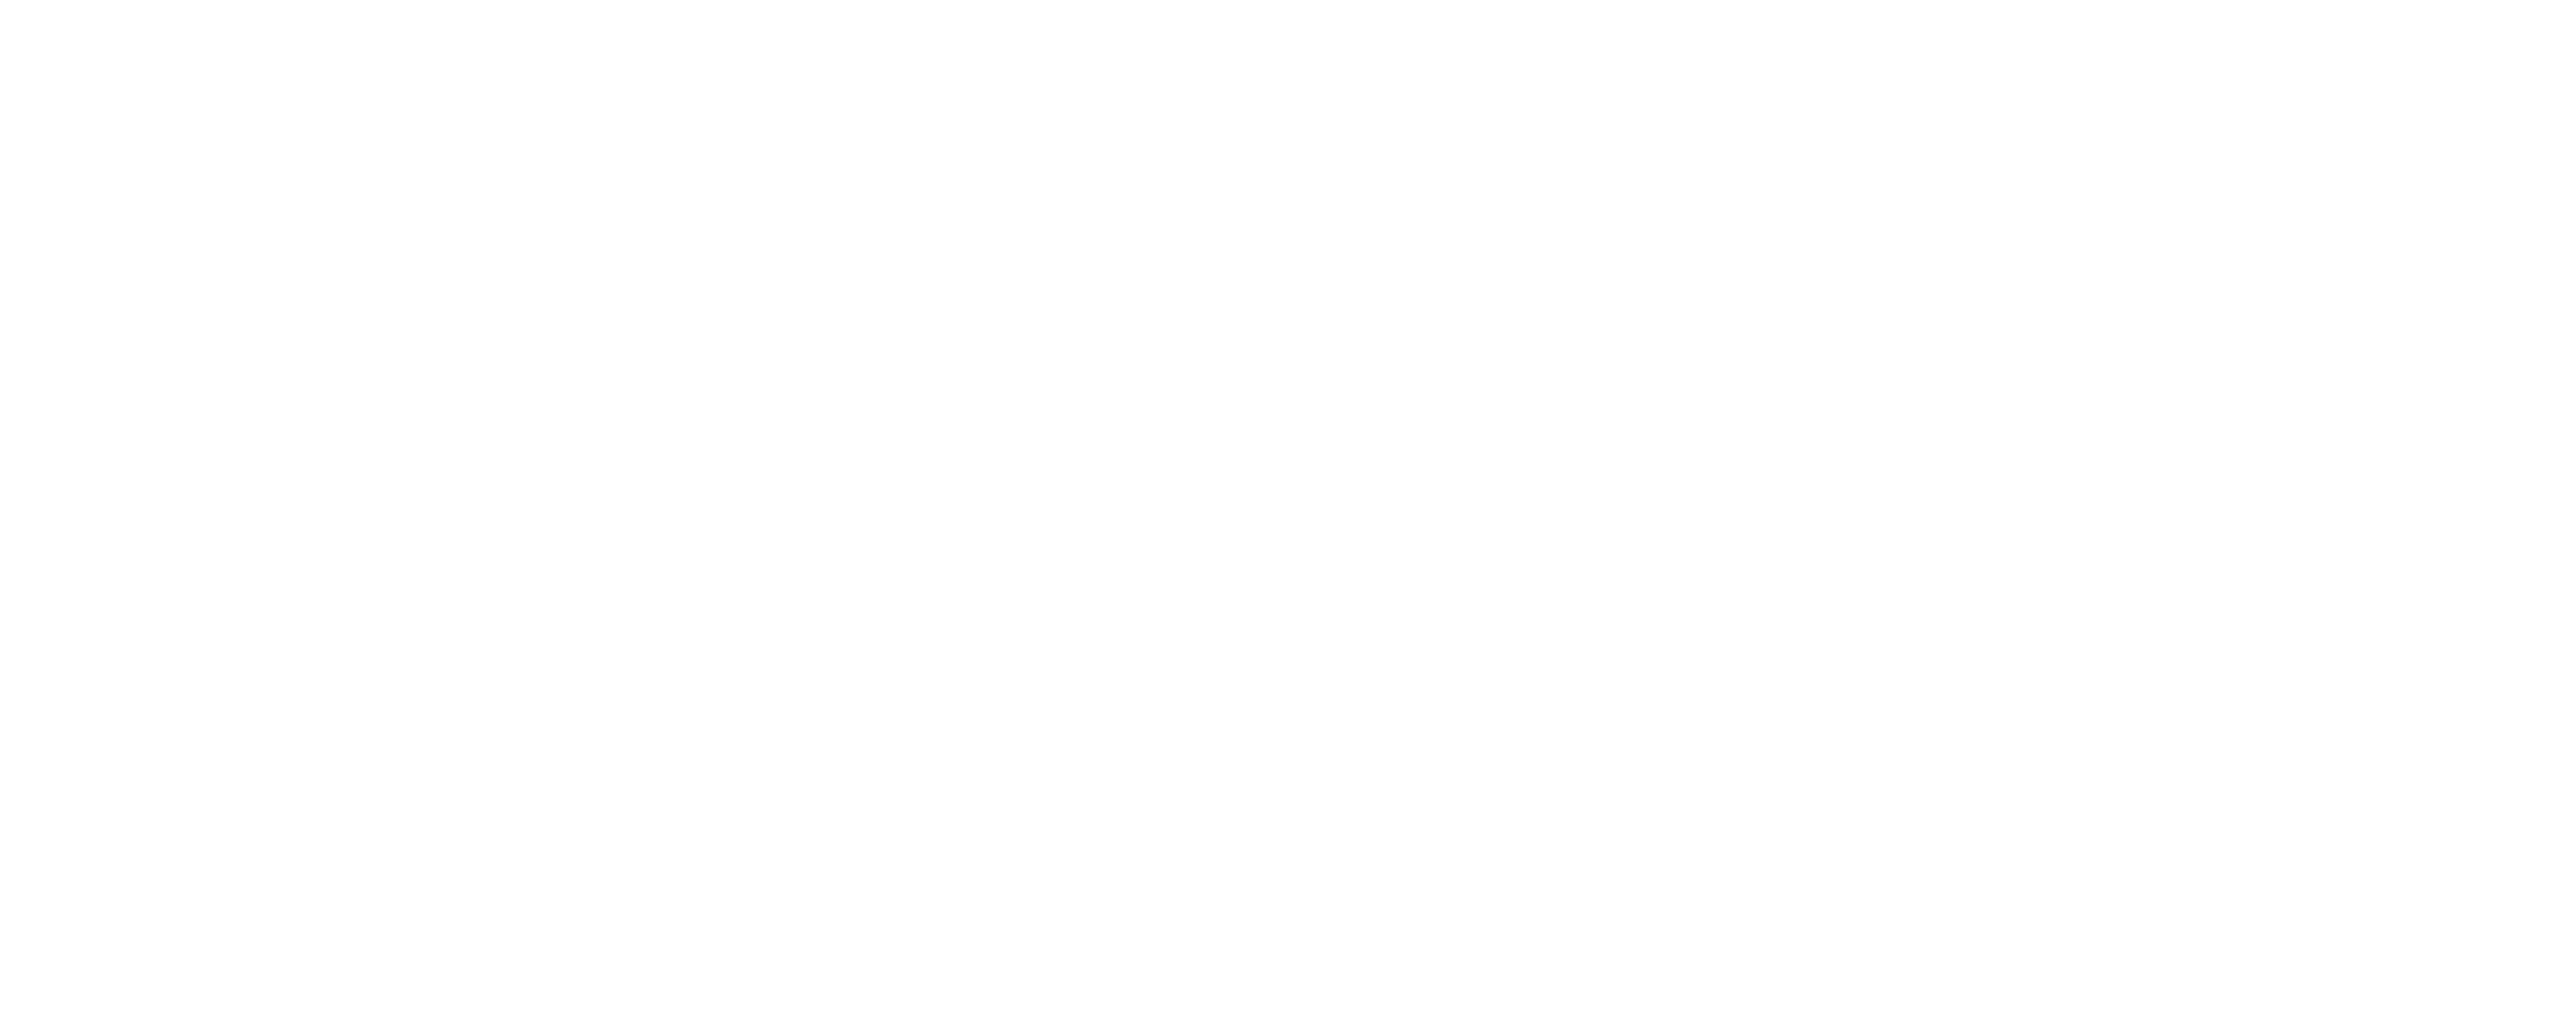 Stokr Logo